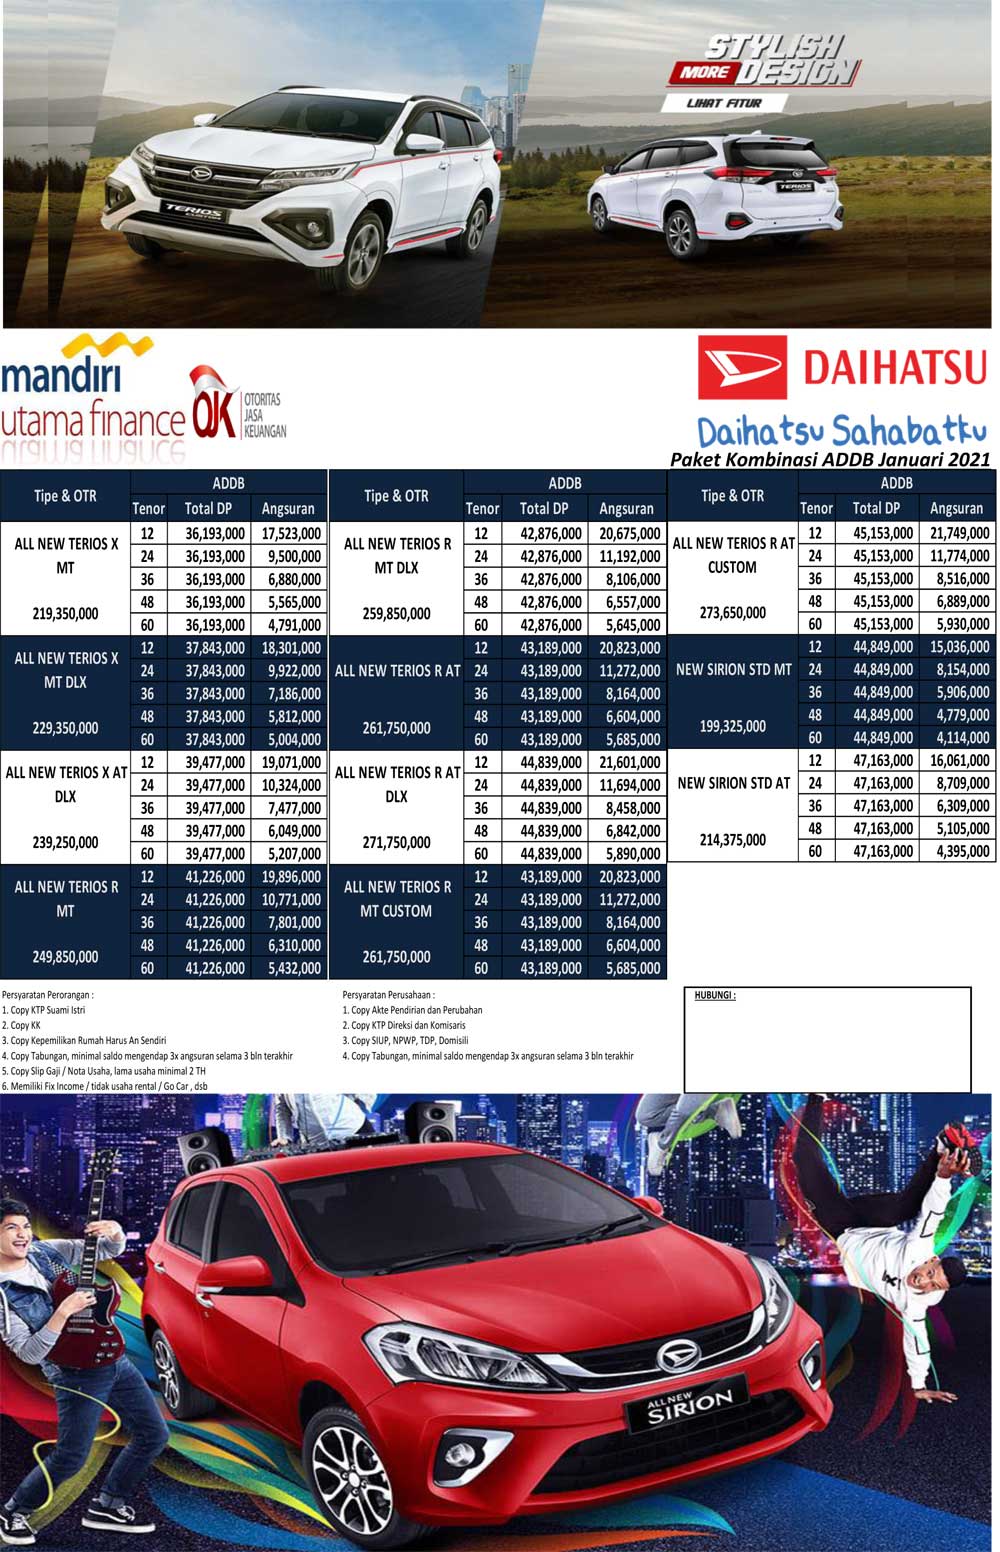 Dealer Daihatsu Ungaran Memberikan Penawaran Mobil Yang ...